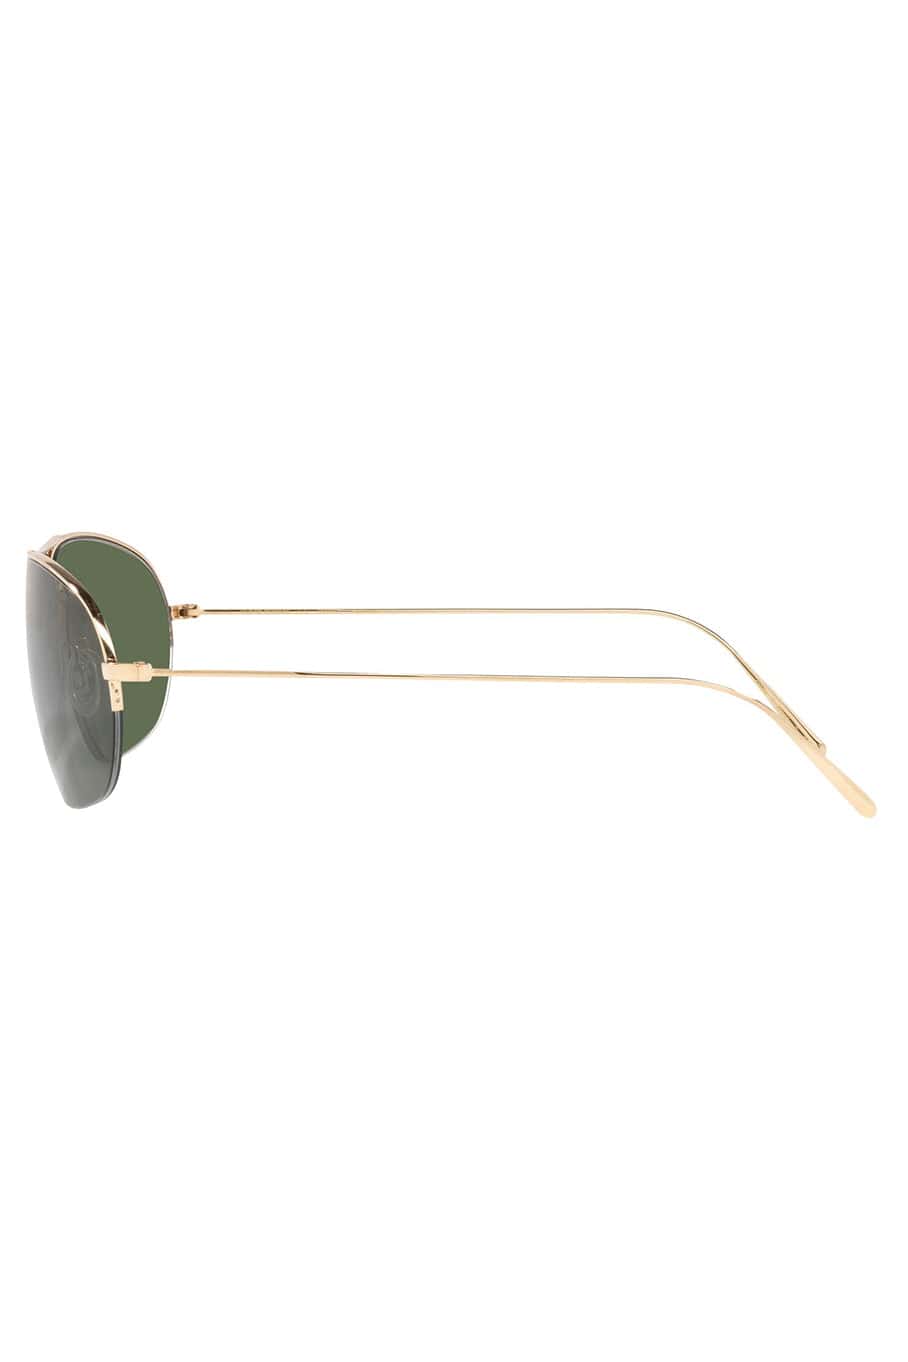 OLIVER PEOPLES-Kondor Sunglasses-GOLD GREEN